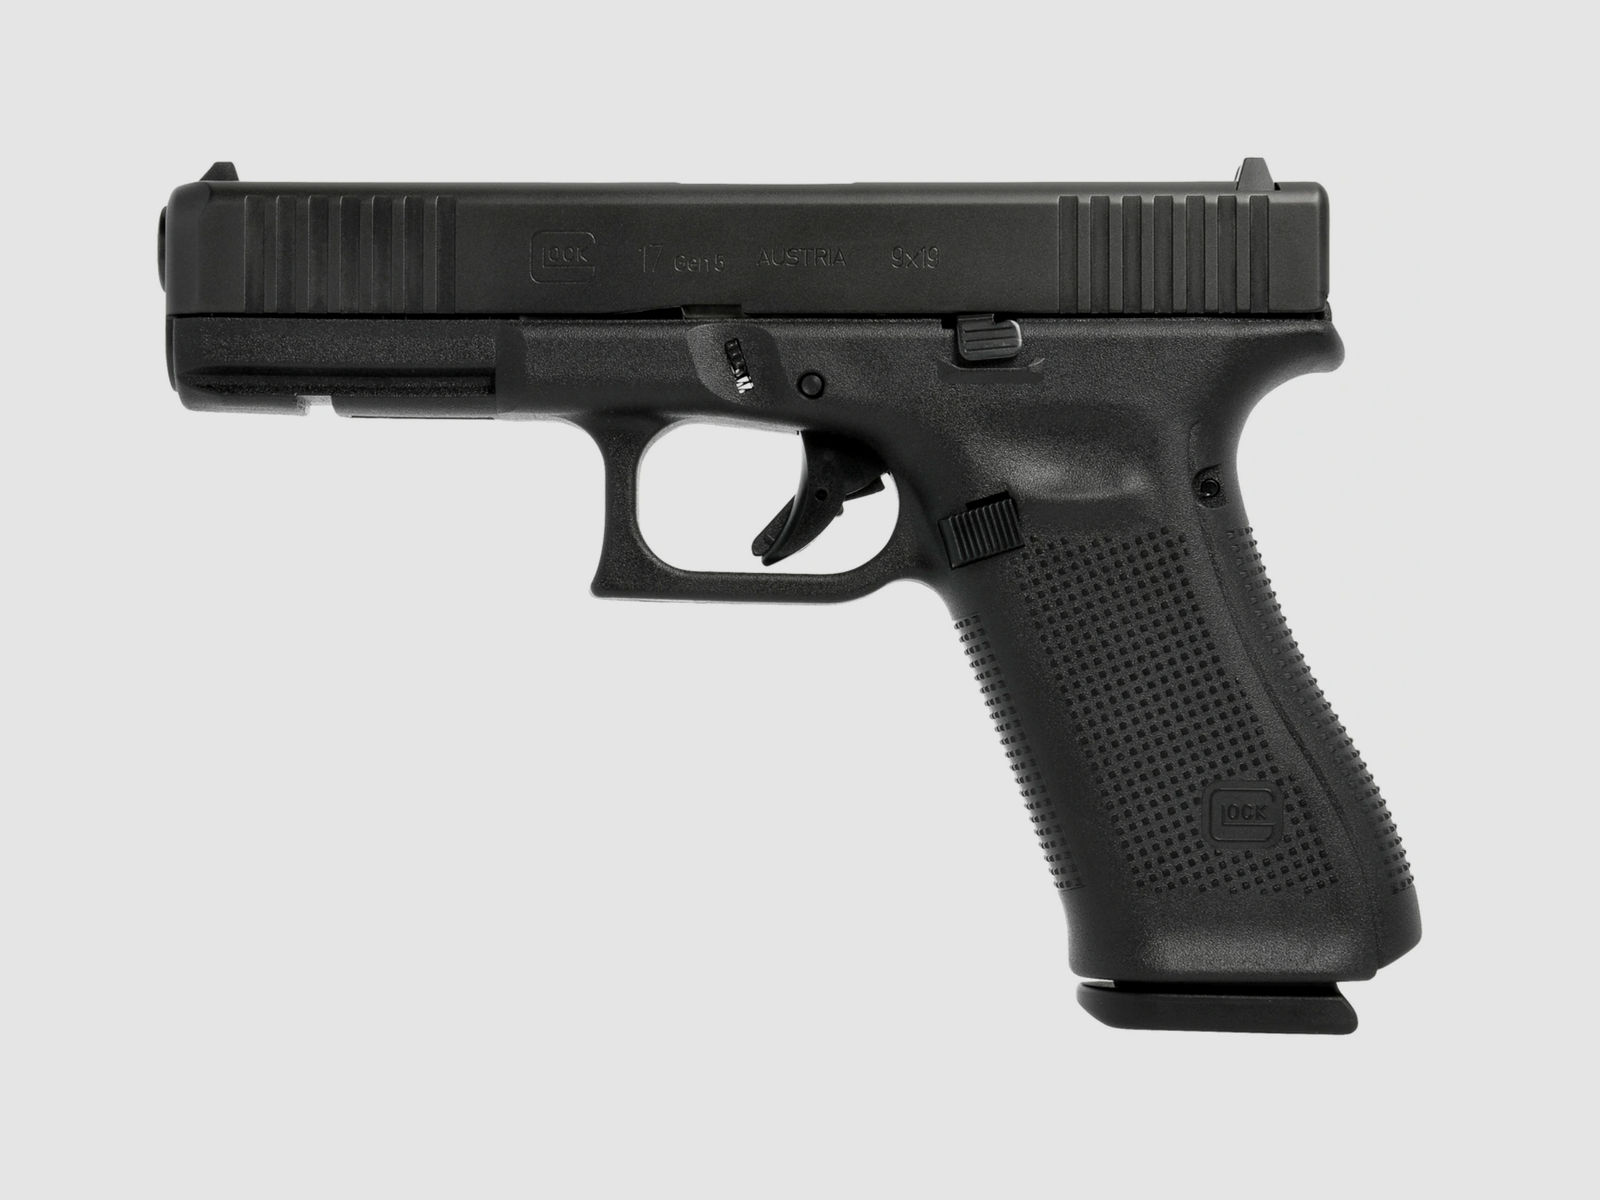 Glock 17 Pistole Gen5 9mm Luger FS mit M.O.S. System